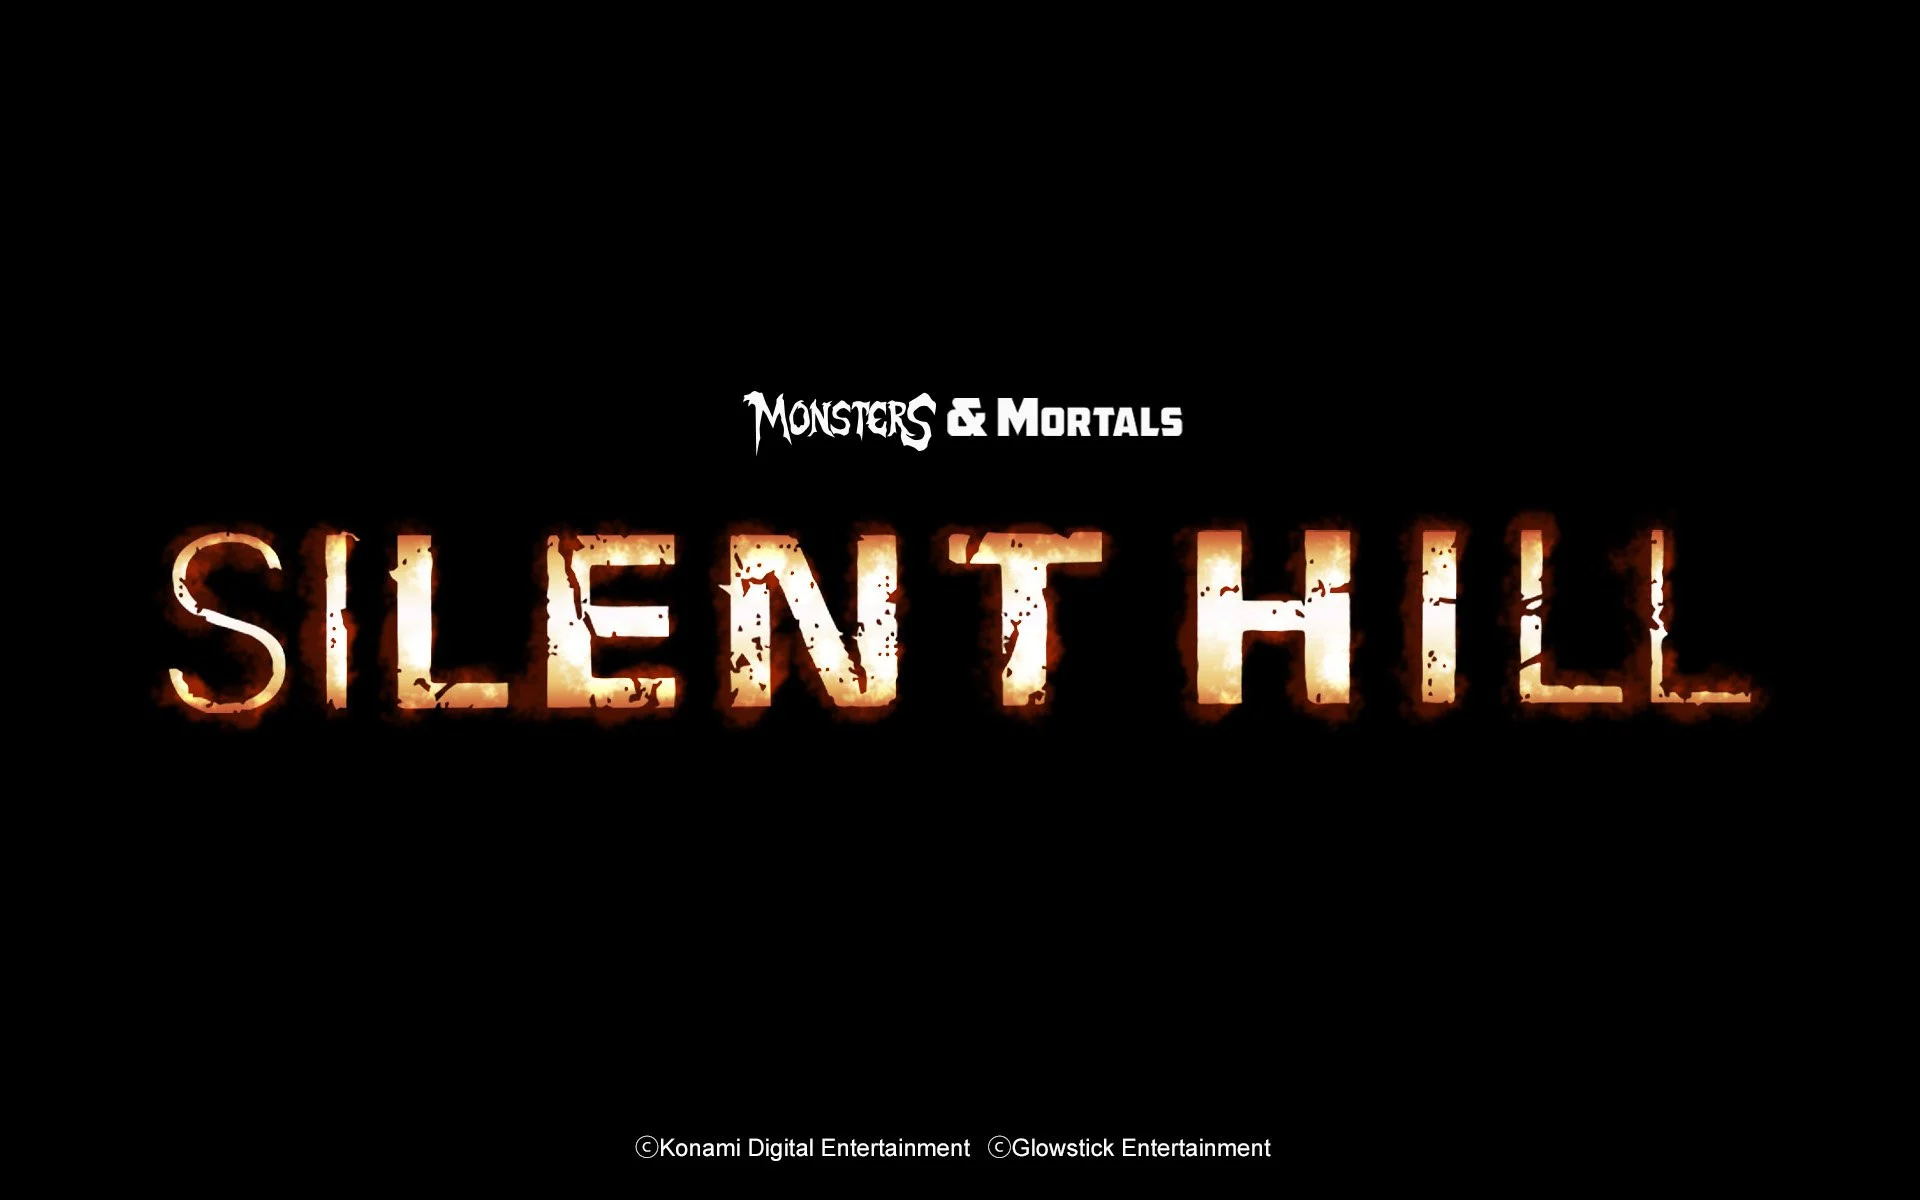 Хоррор Dark Deception: Monsters & Mortals получит DLC по мотивам Silent Hill - фото 1